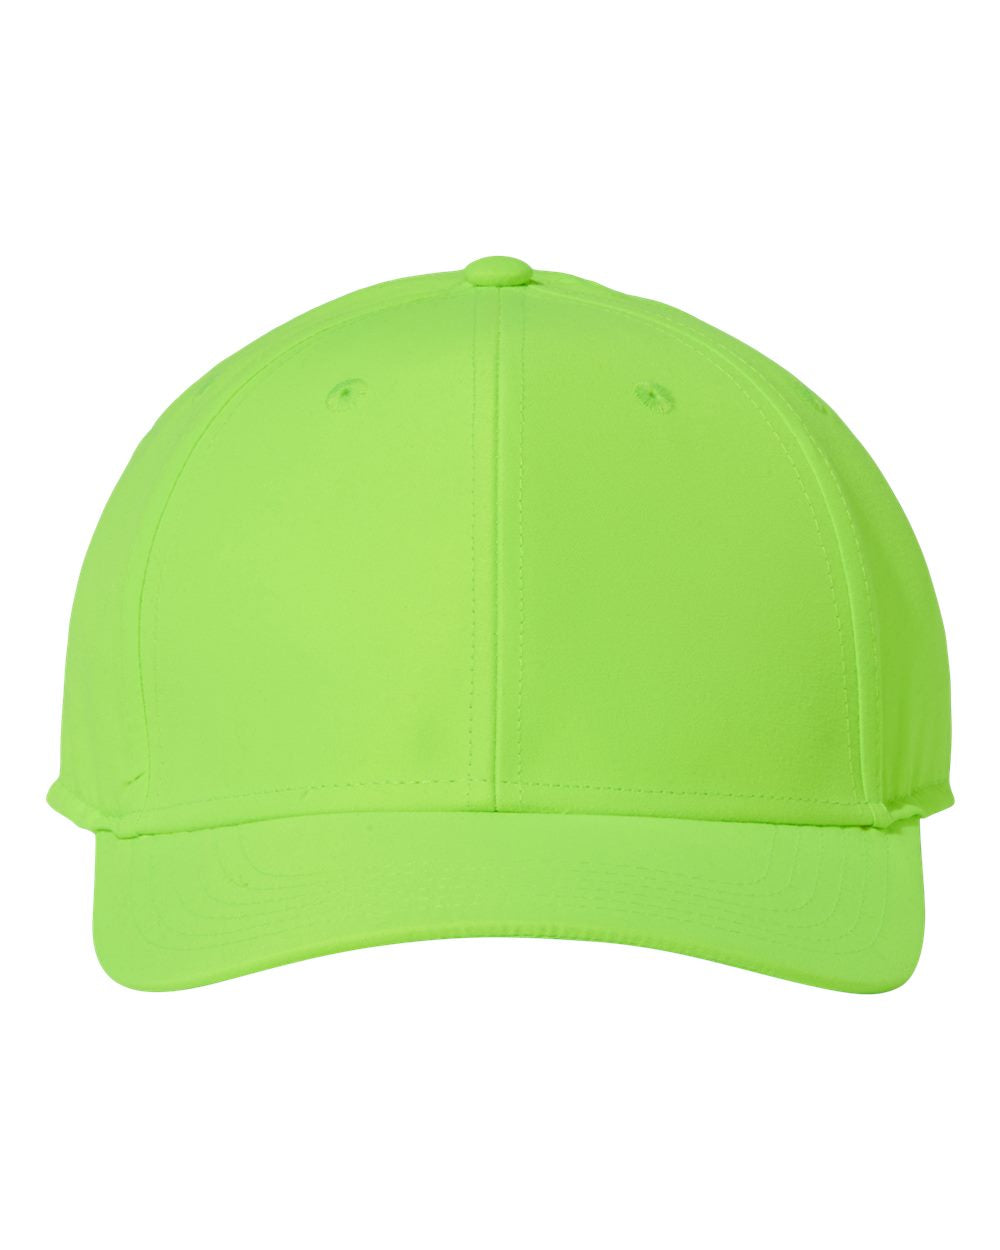 Customizable Atlantis Headwear Recy Feel Cap in fluorescent green